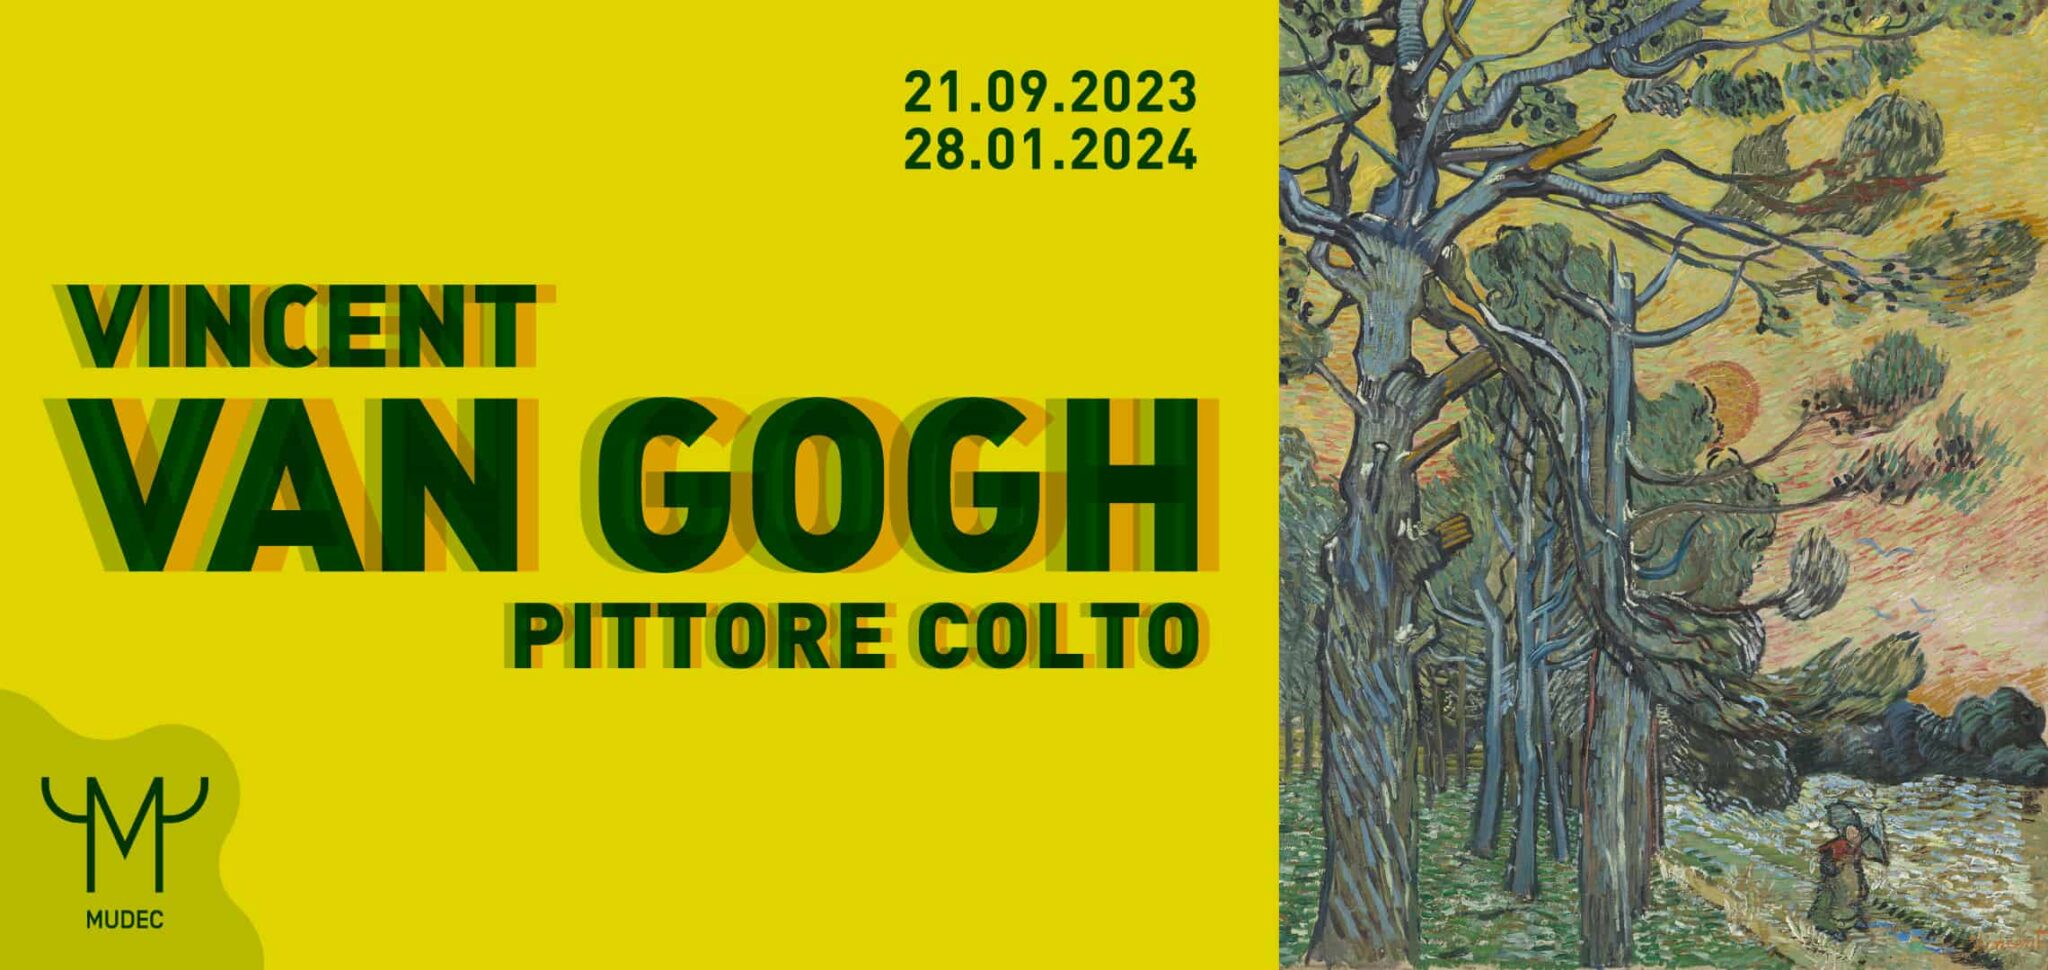 Vincent Van Gogh, pittore colto: la nuova mostra al Mudec di Milano Vincent Van Gogh, pittore colto: la nuova mostra al Mudec di Milano • I Like Milano